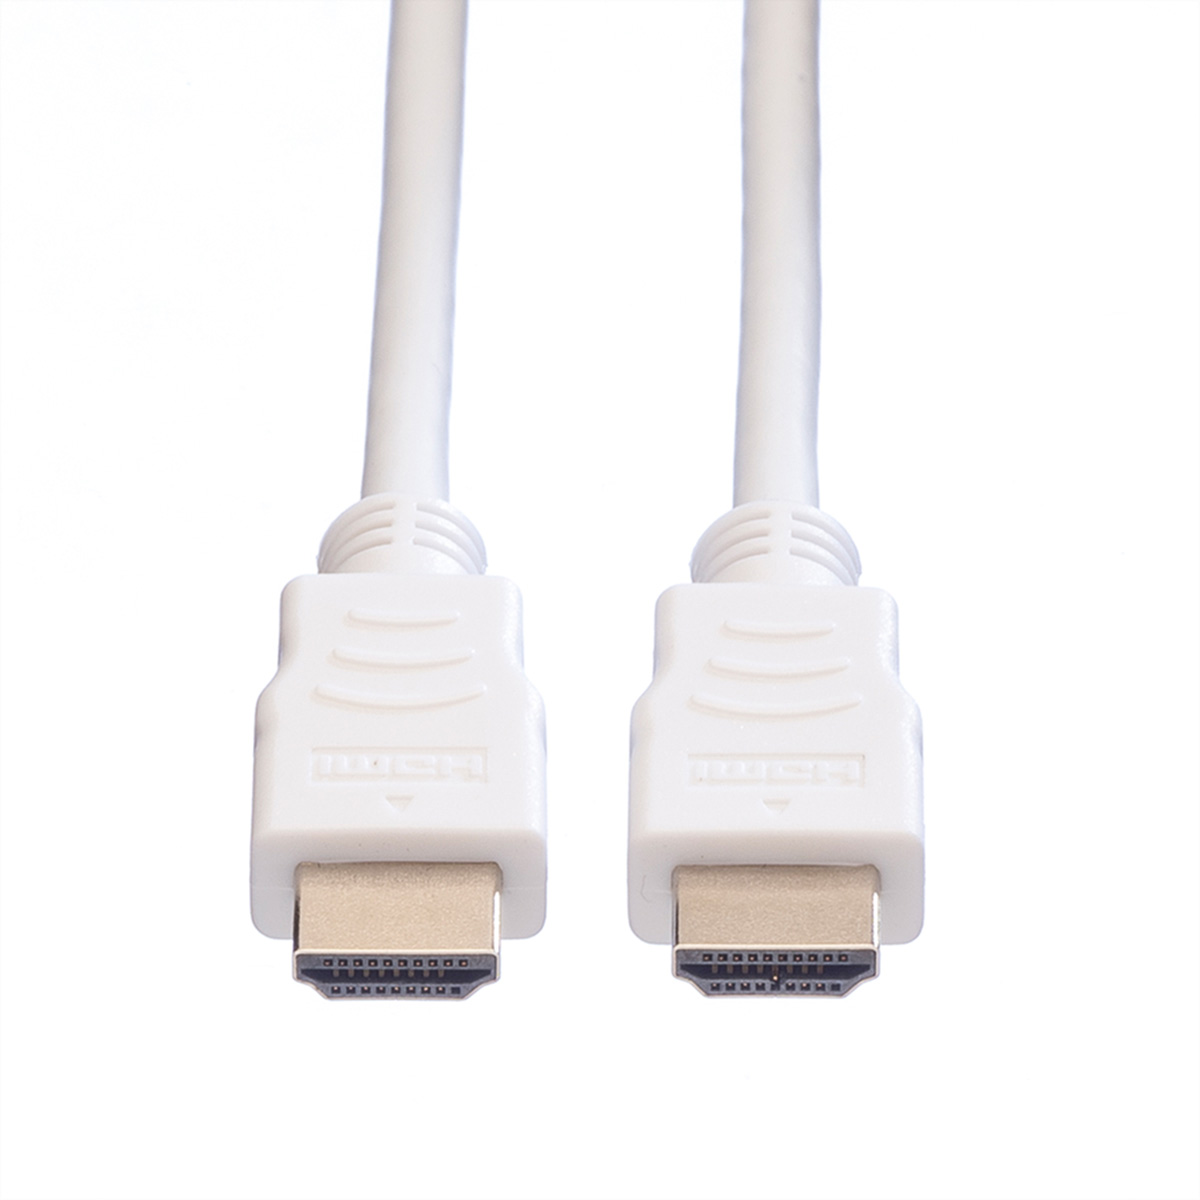 VALUE HDMI High Kabel Ethernet Ethernet mit Speed Speed Kabel HDMI High mit